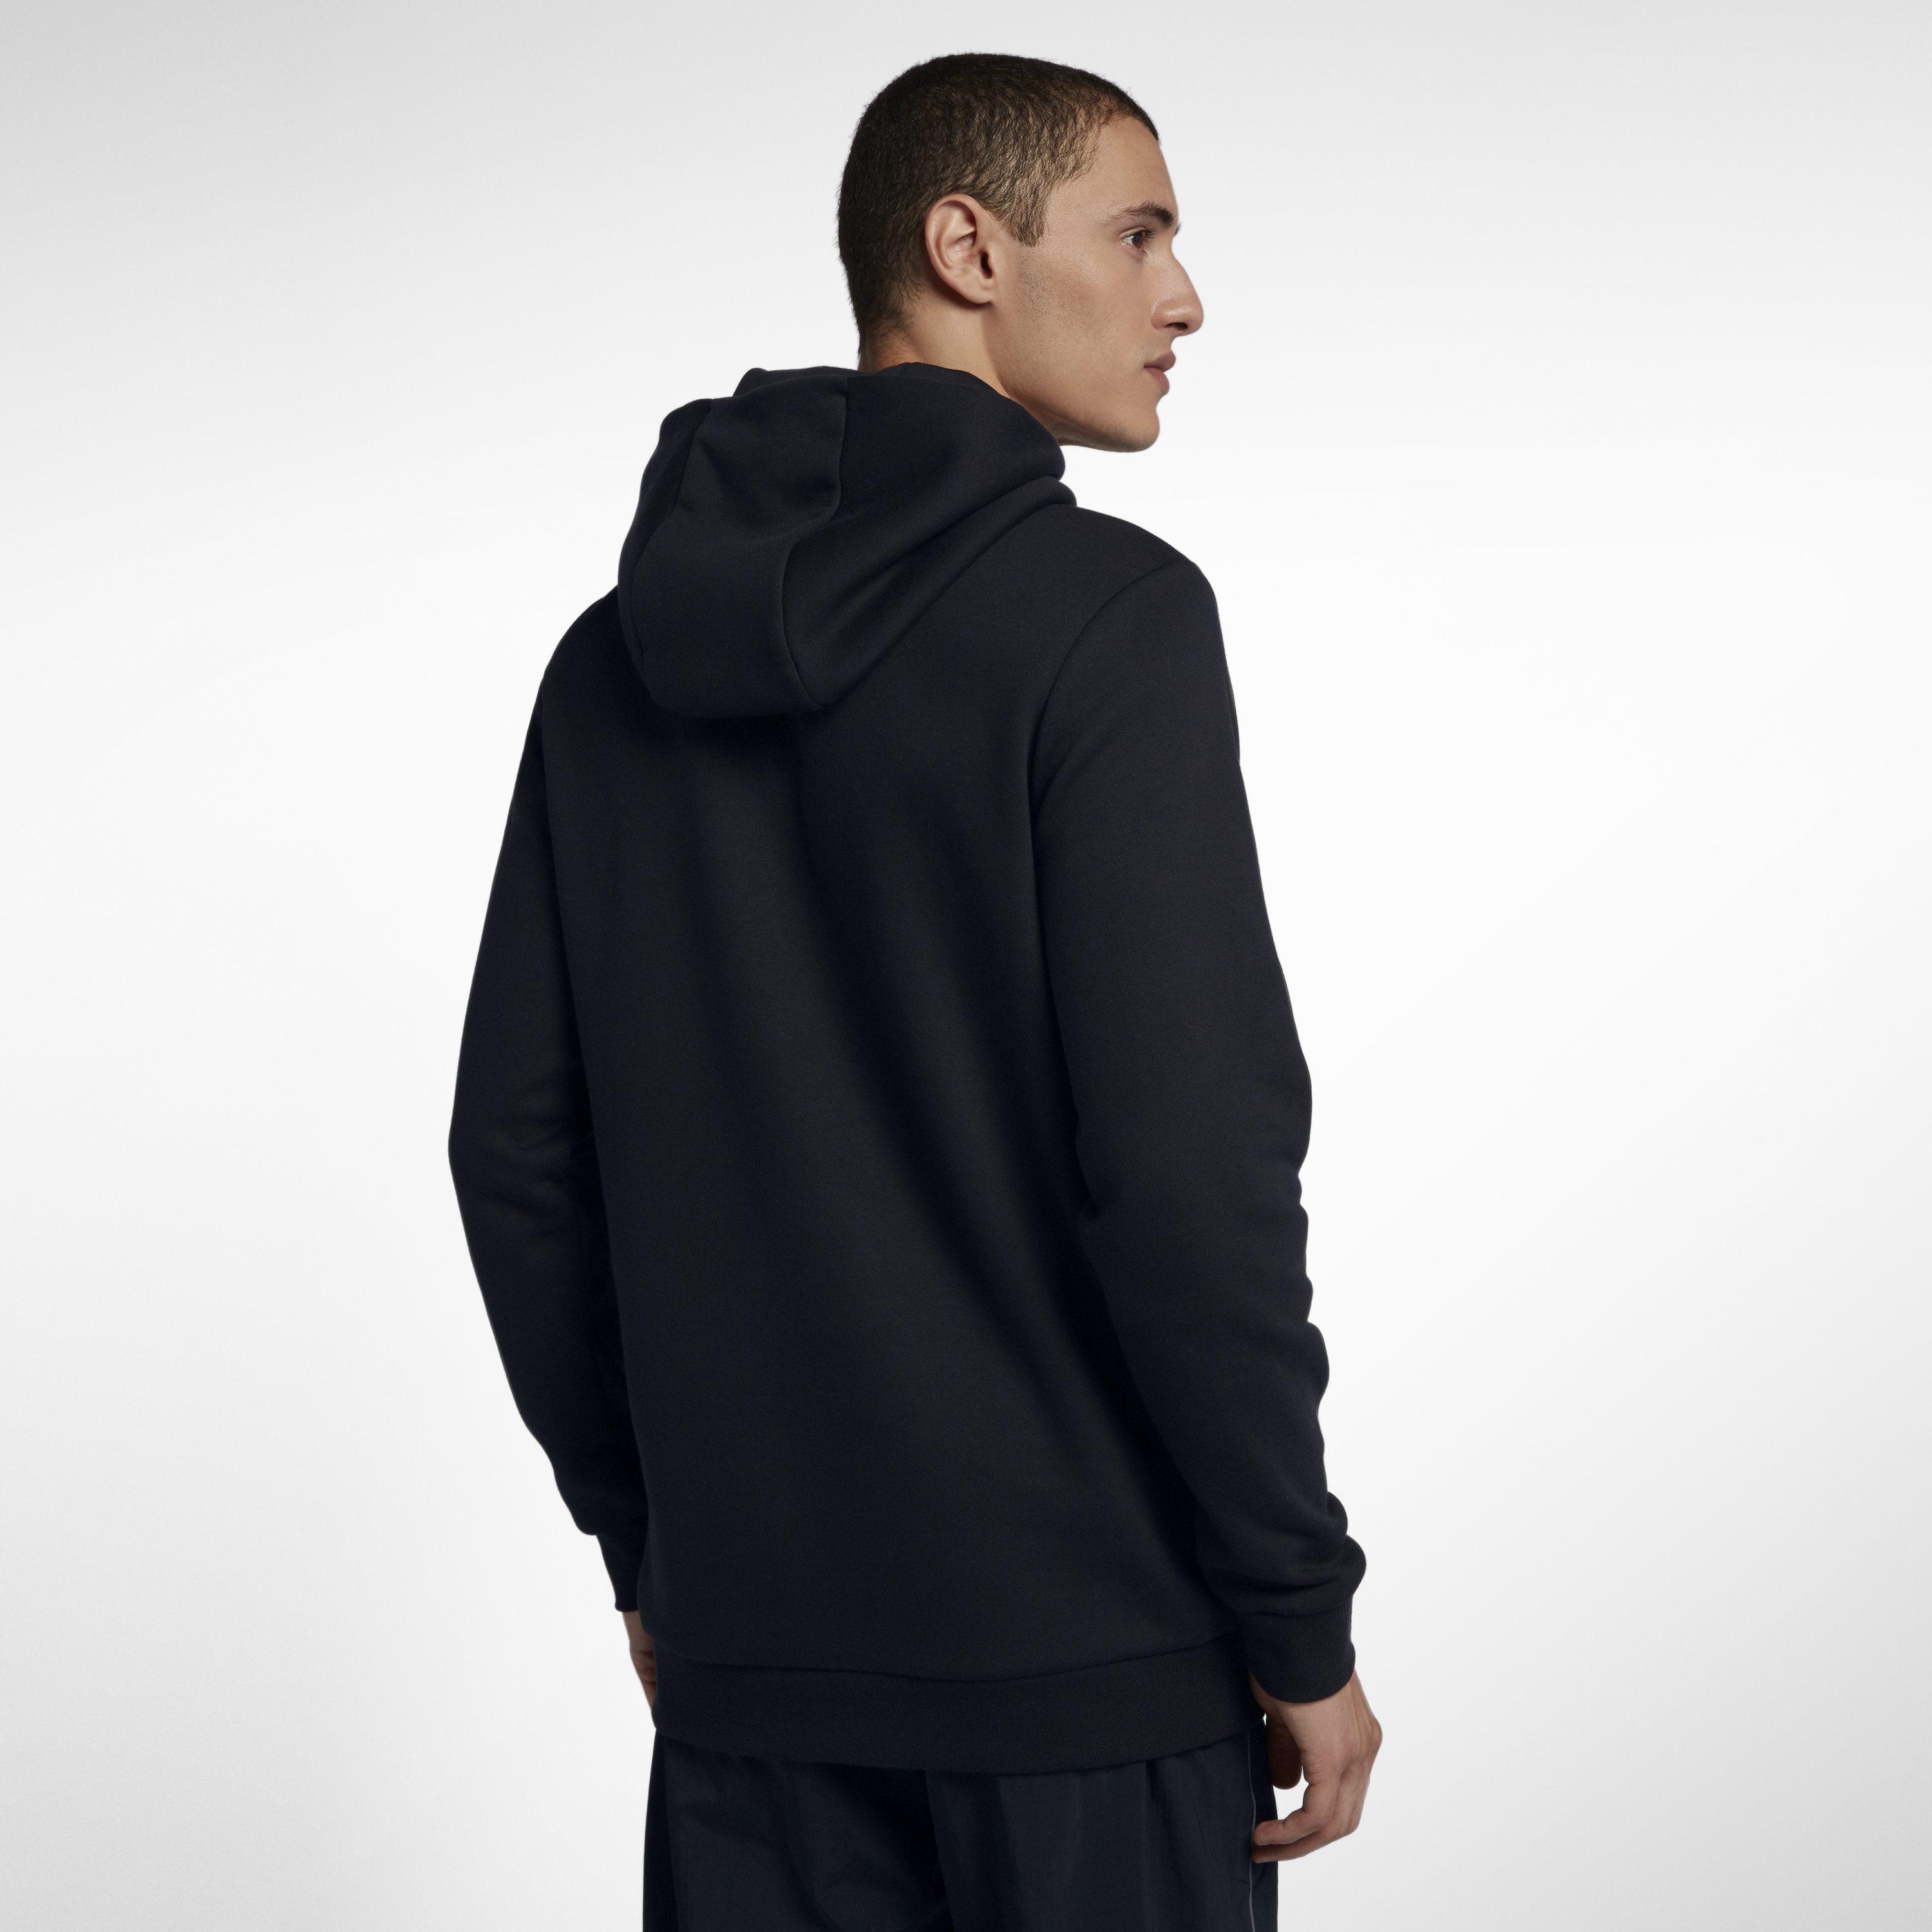 Nike Paris Saint-germain Jumpman Pullover Hoodie in Black ...